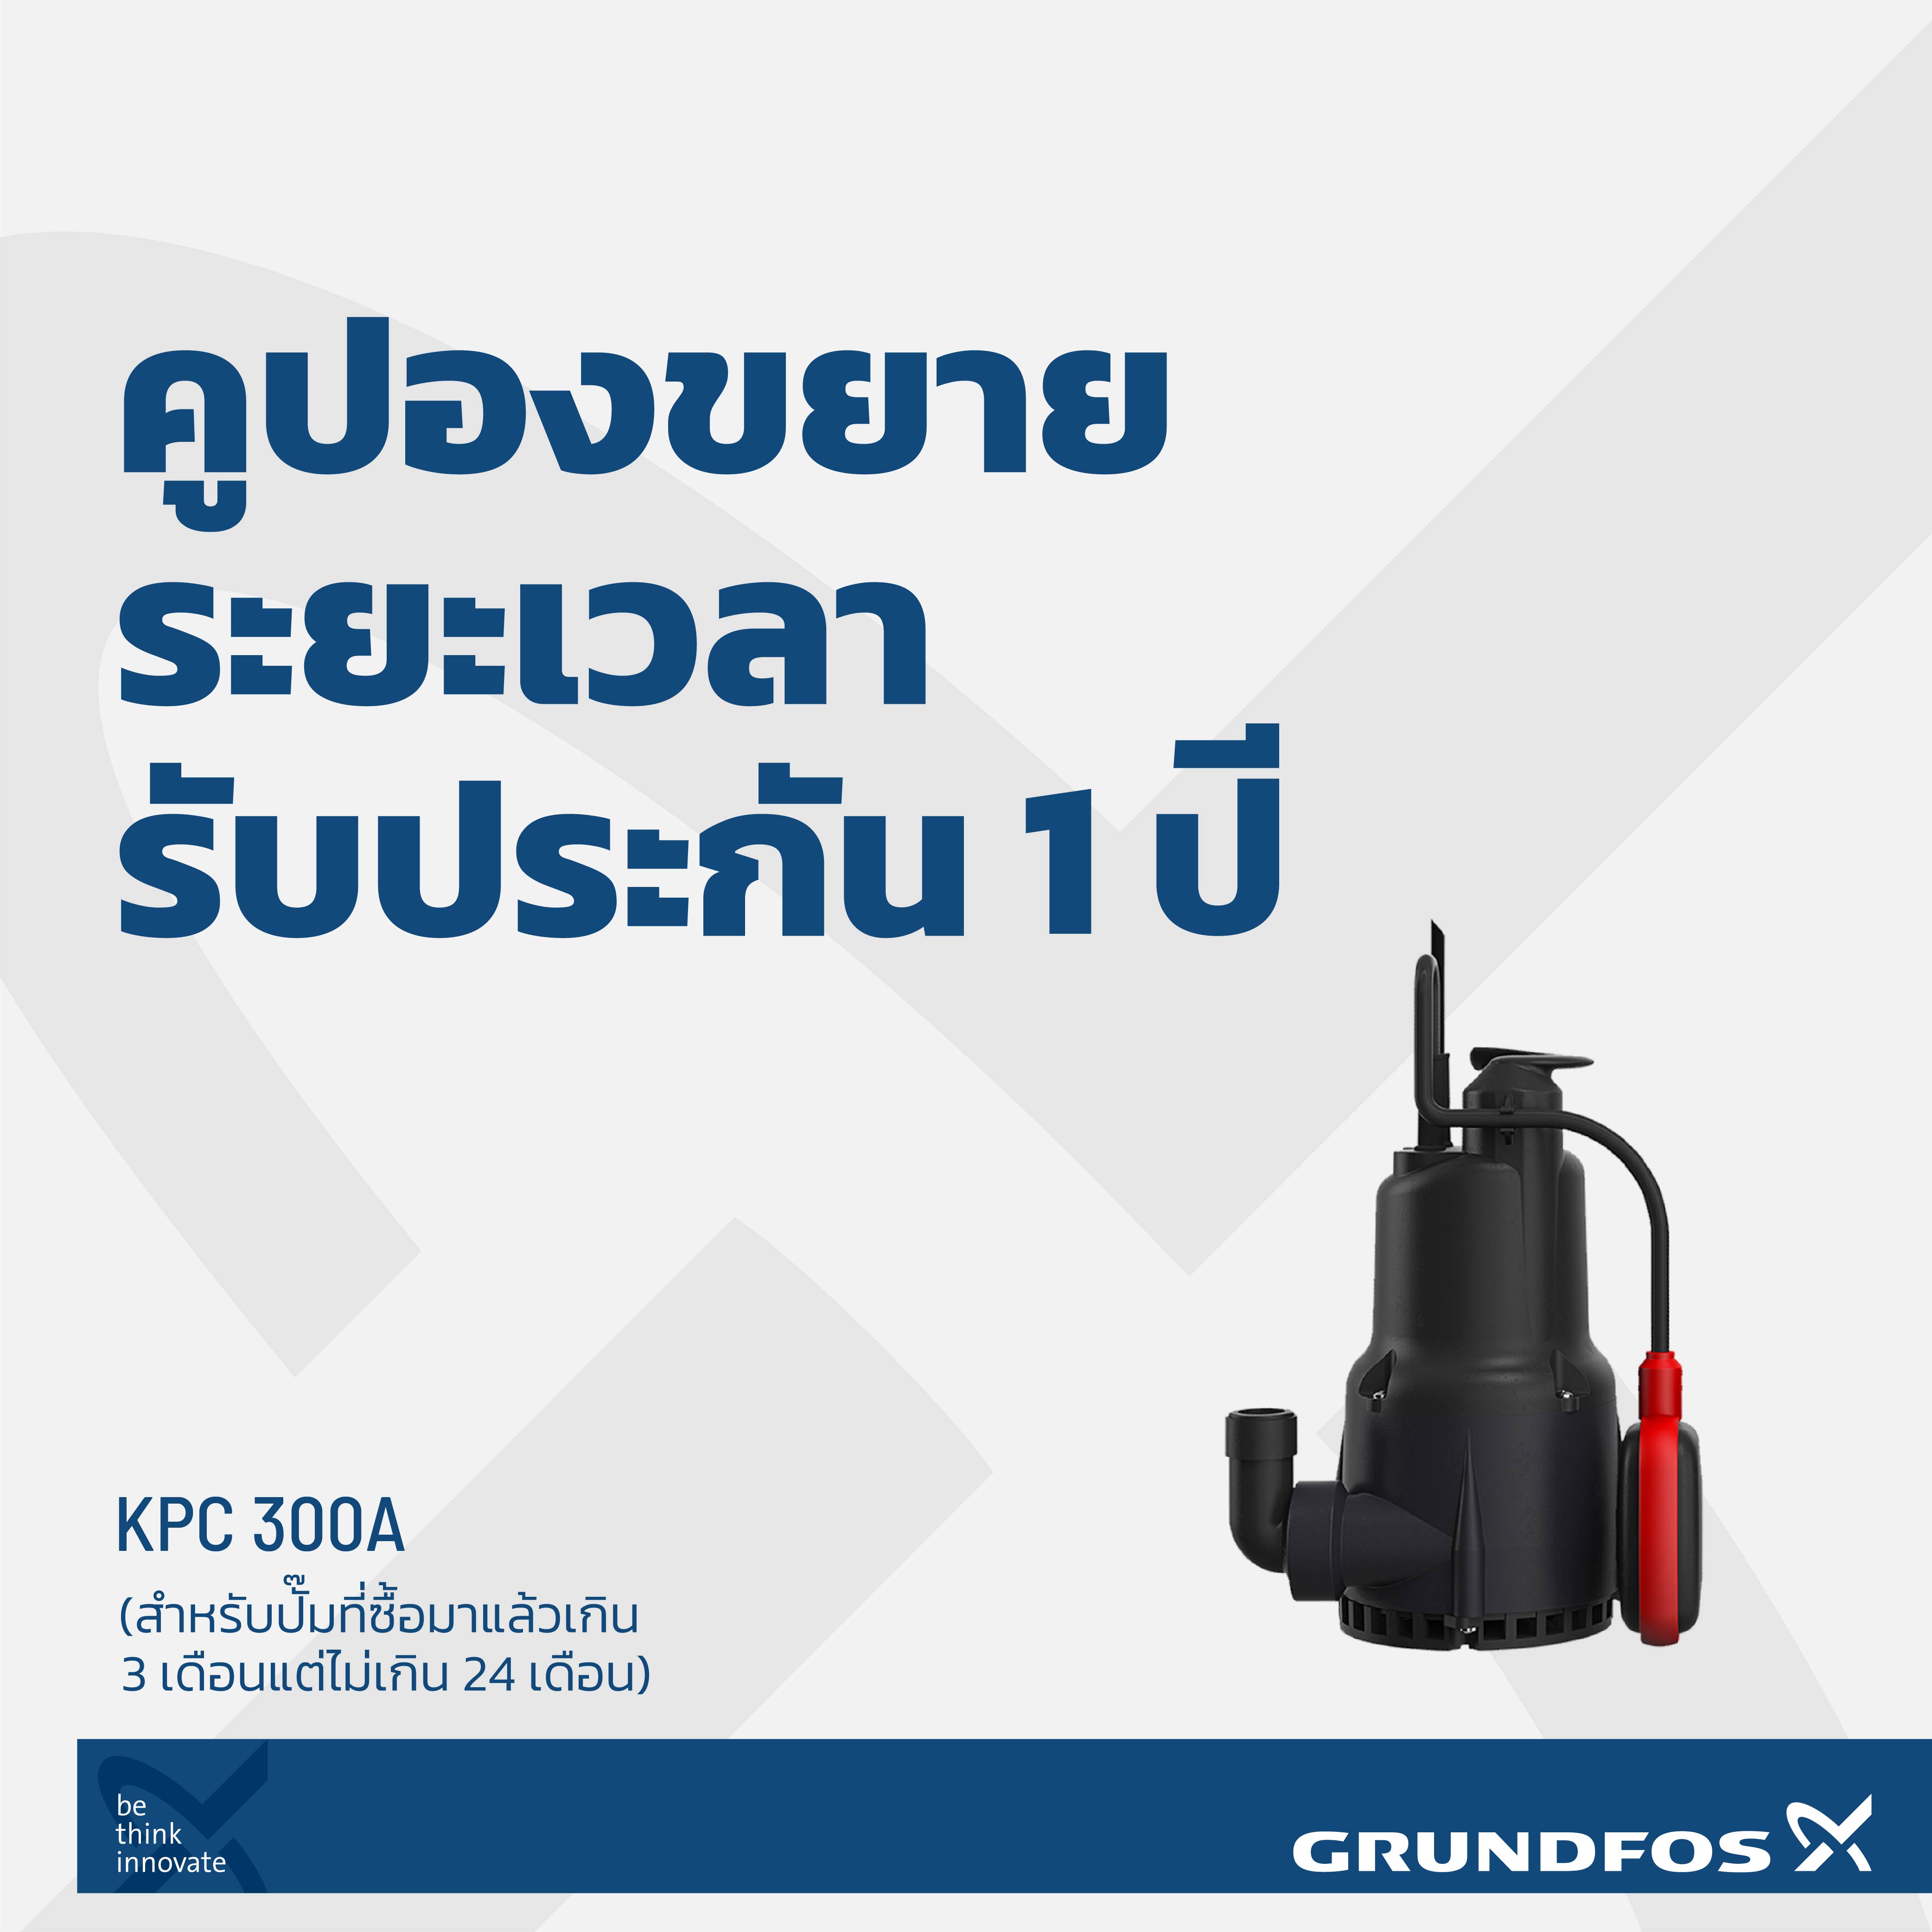 คูปองขยายเวลารับประกันสินค้าเพิ่ม 1 ปี ปั๊มน้ำรุ่น KPC 300A (สำหรับปั๊มที่ซื้อมาแล้วเกิน 3 เดือนแต่ไม่เกิน 24 เดือน)